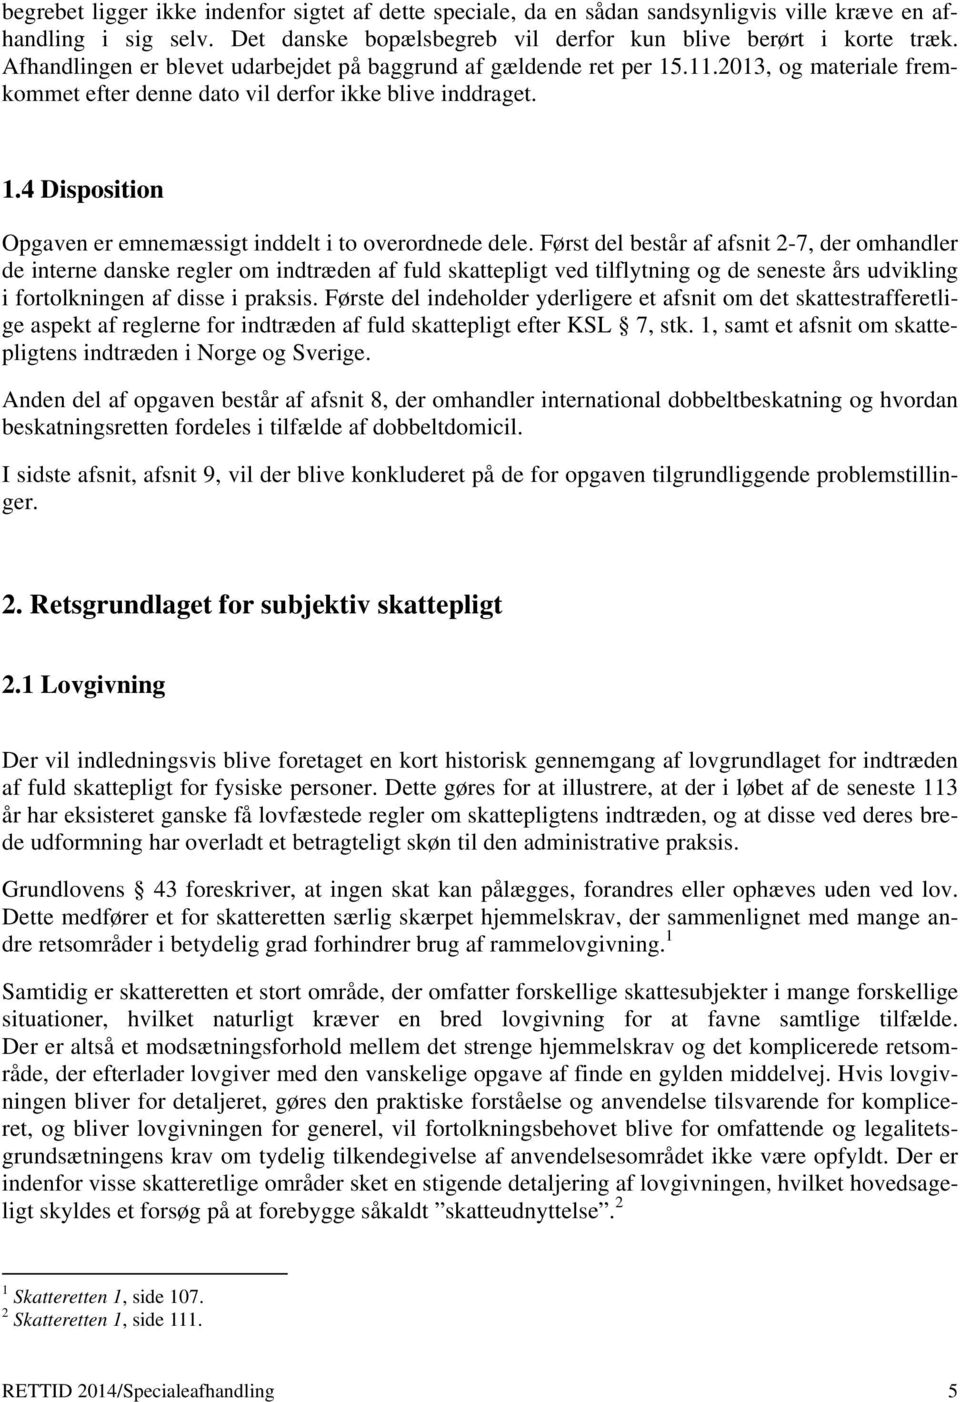 Først del består af afsnit 2-7, der omhandler de interne danske regler om indtræden af fuld skattepligt ved tilflytning og de seneste års udvikling i fortolkningen af disse i praksis.